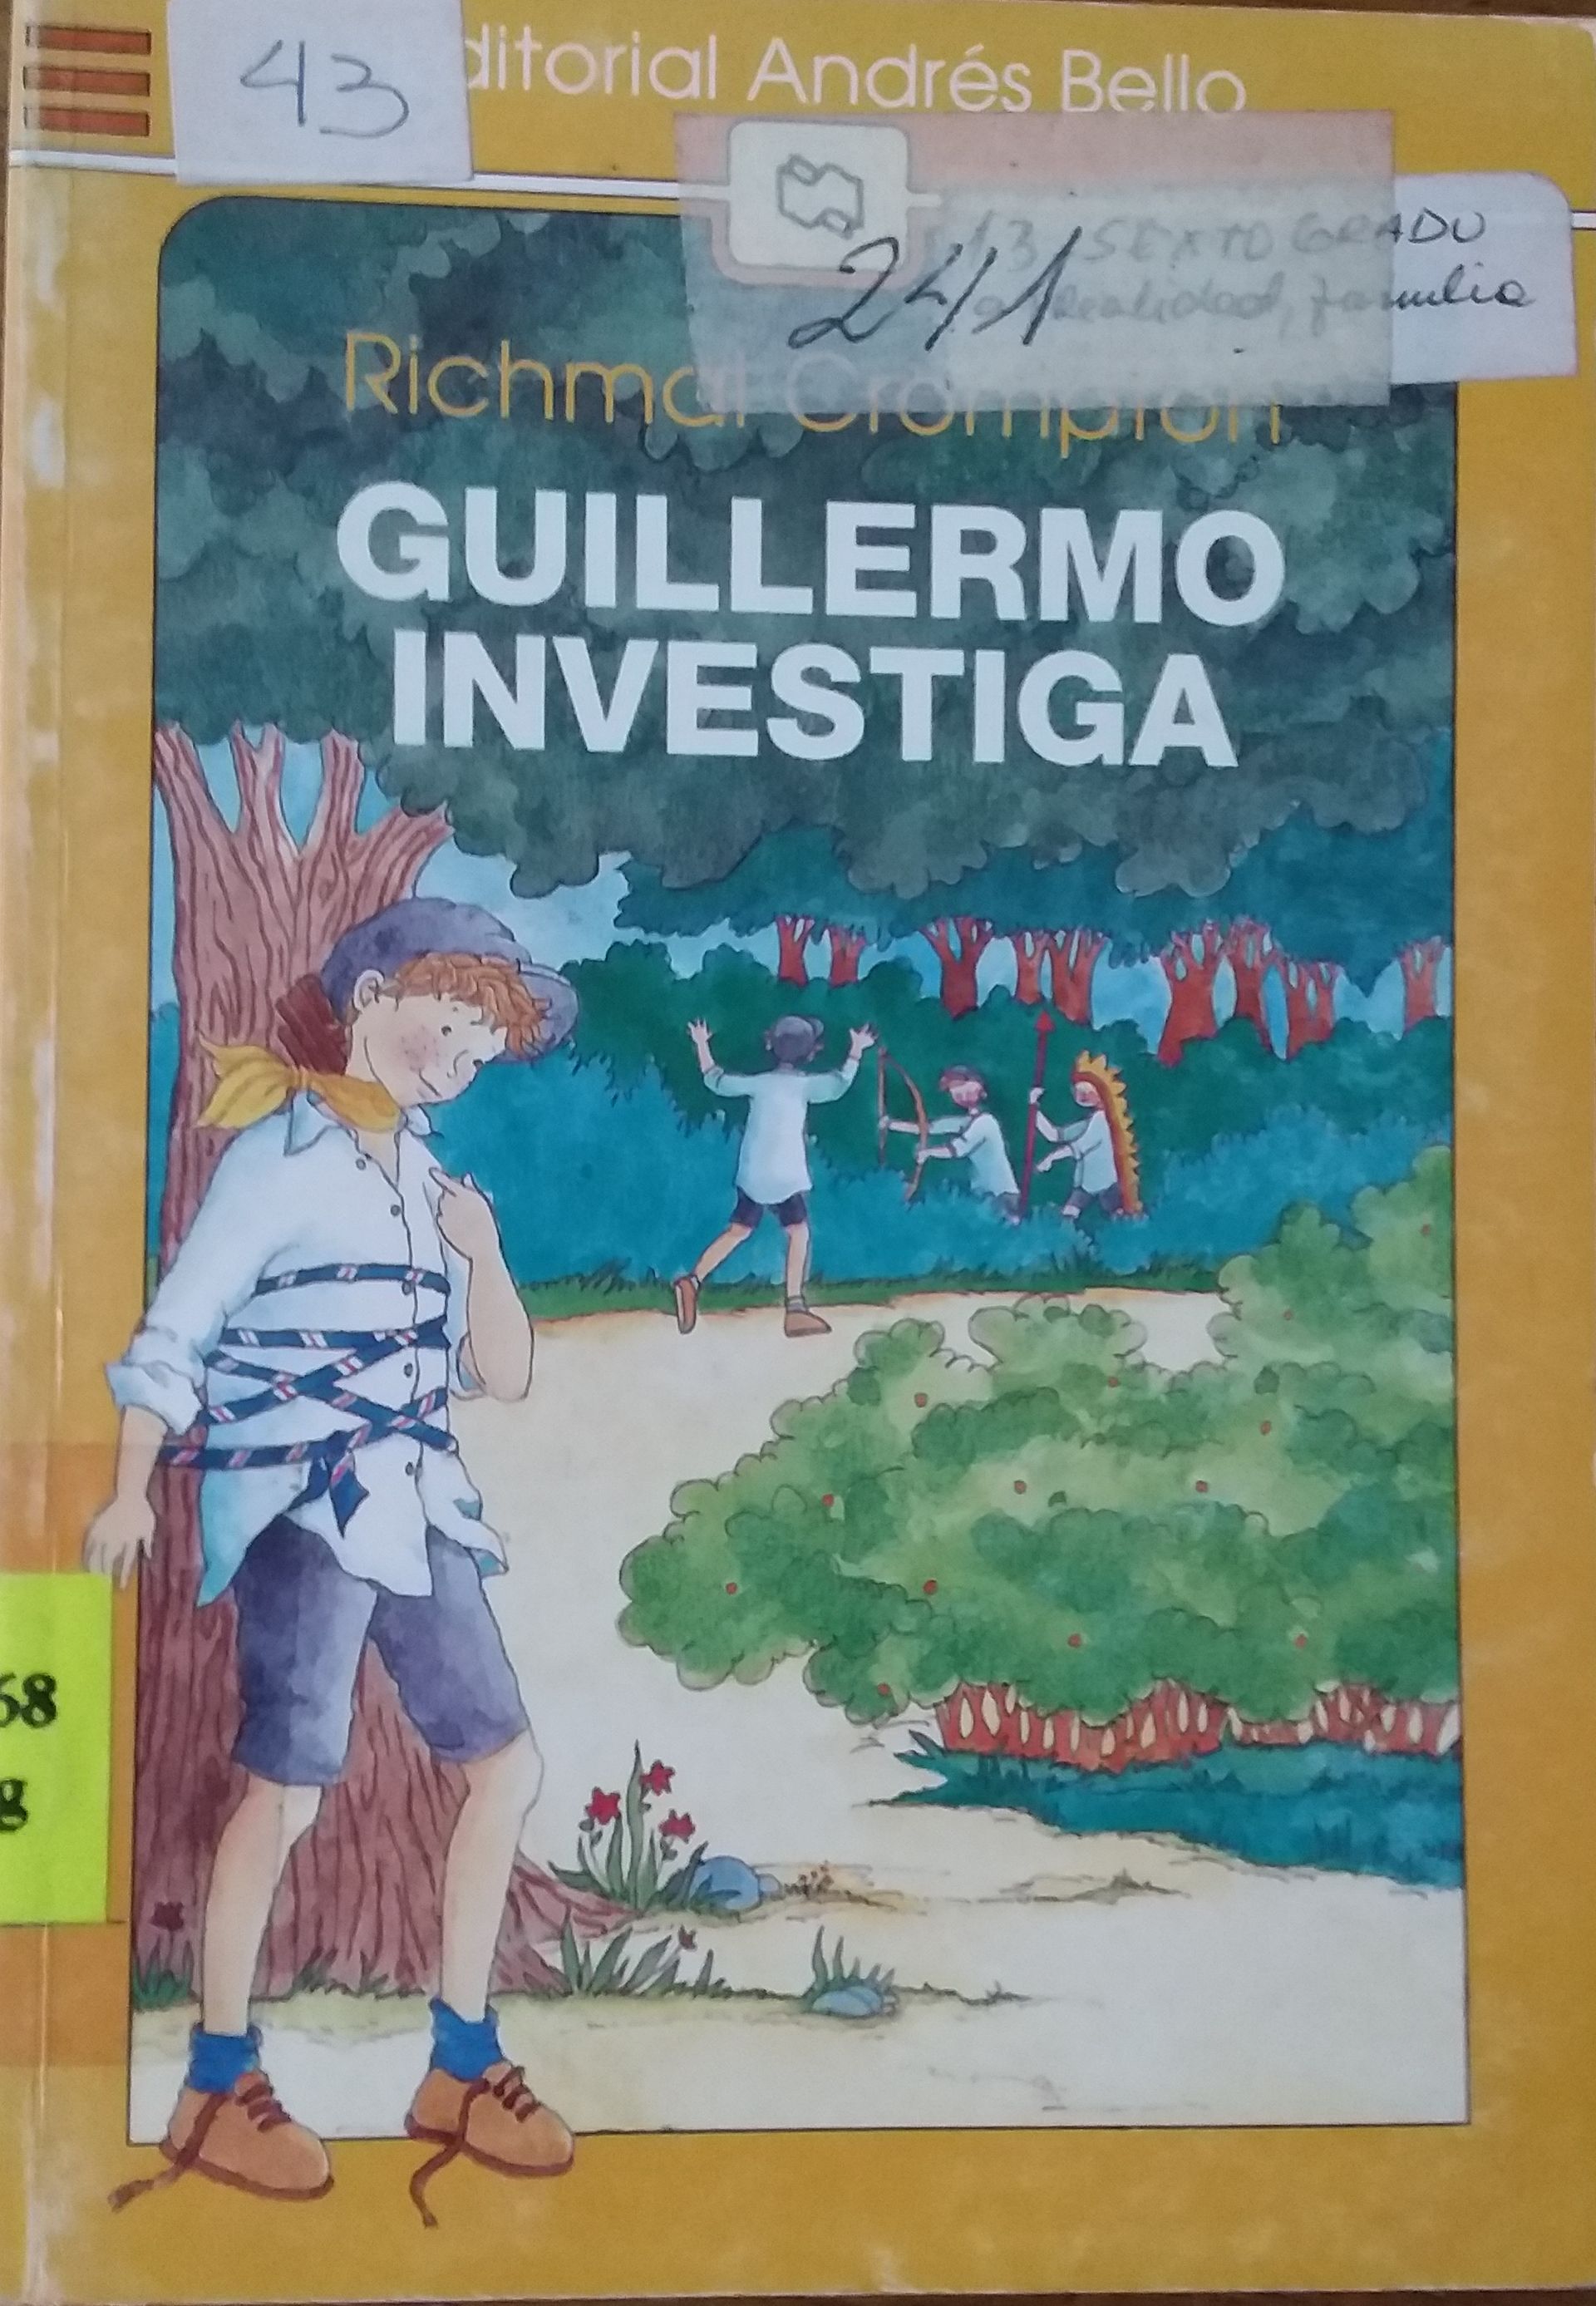 Guillermo Investiga